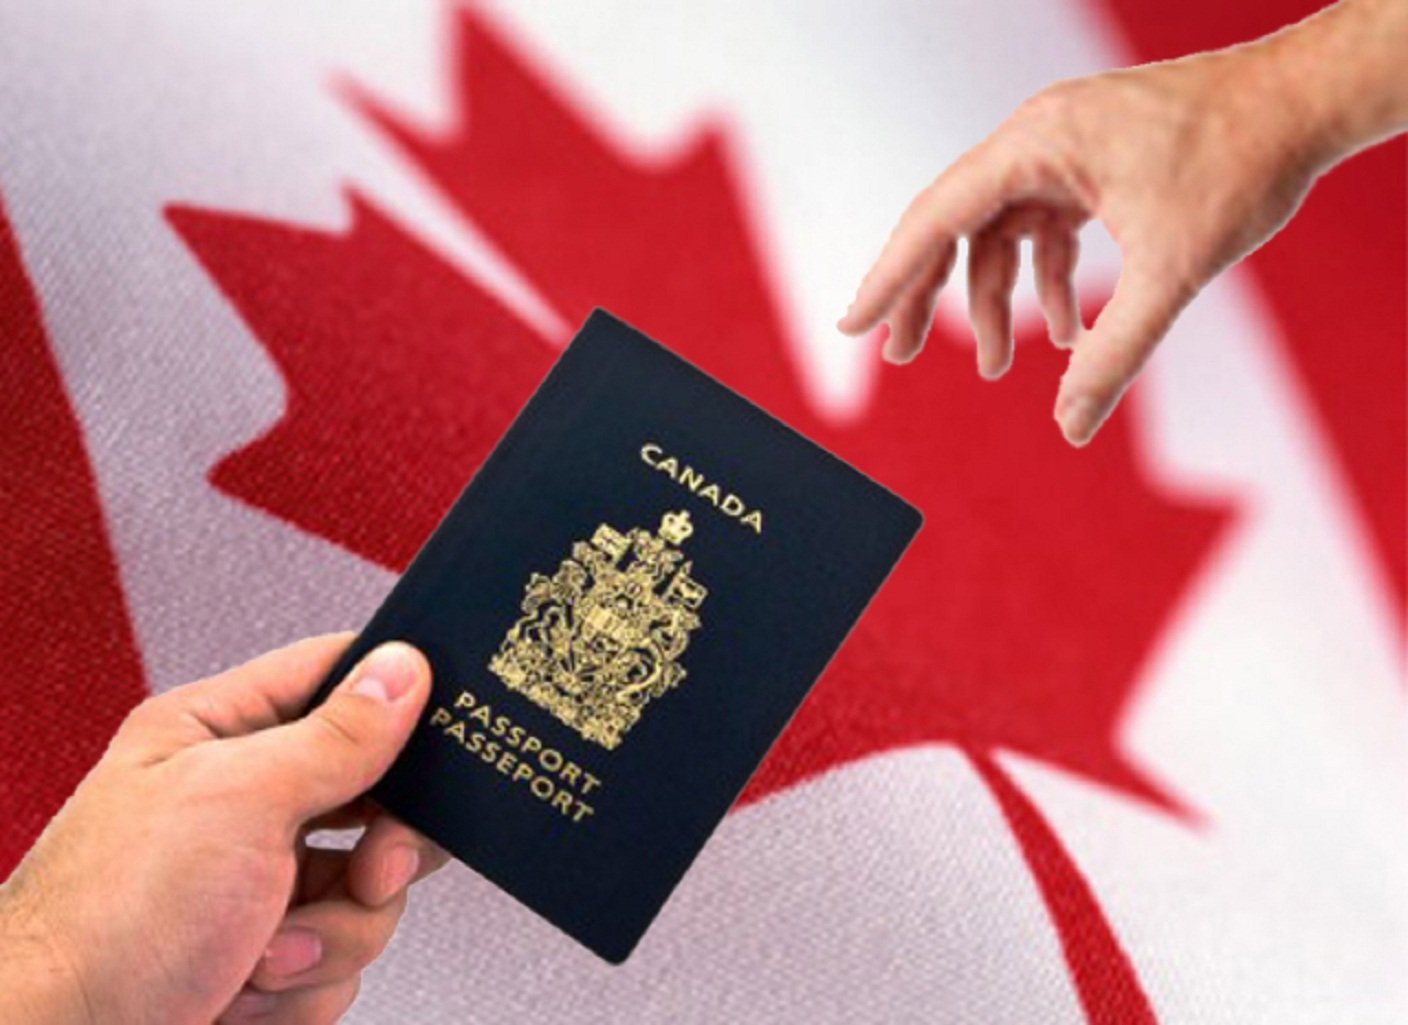  كندا تؤكد استعدادها لاستقبال أعداد أكبر من المهاجرين